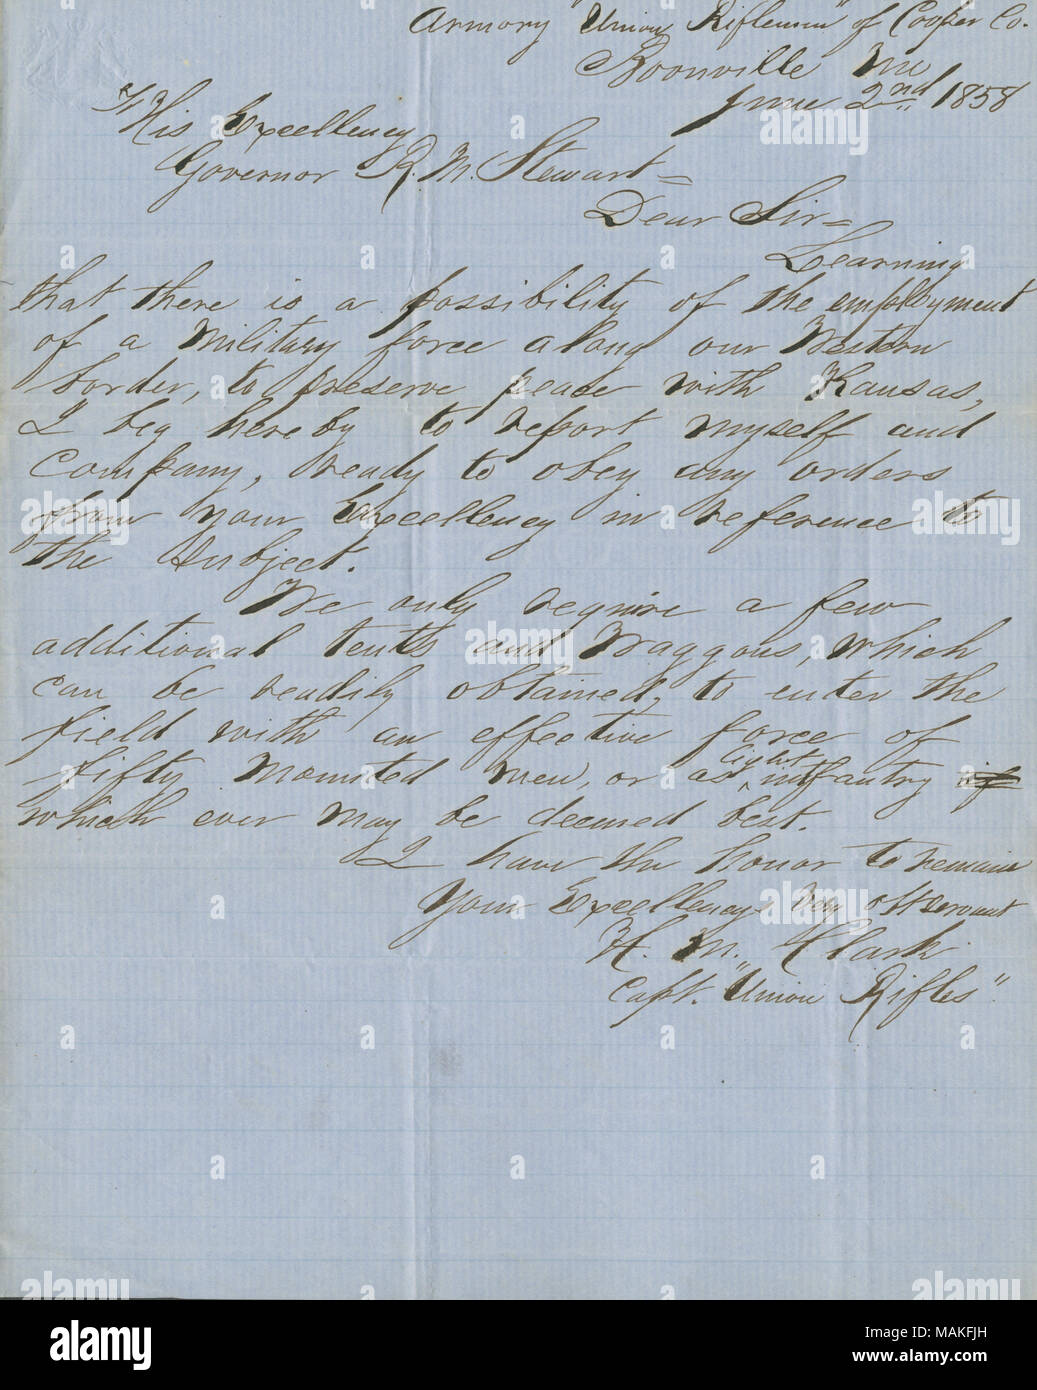 Bietet seine Firma zu patrouillieren der westlichen Grenze Frieden mit Kansas zu bewahren. Titel: Brief von H.M.Clark, Kapitän Union Gewehre, an Seine Exzellenz reg. R. M. Stewart, 2. Juni 1858. 2. Juni 1858. Clark, H. M. Stockfoto